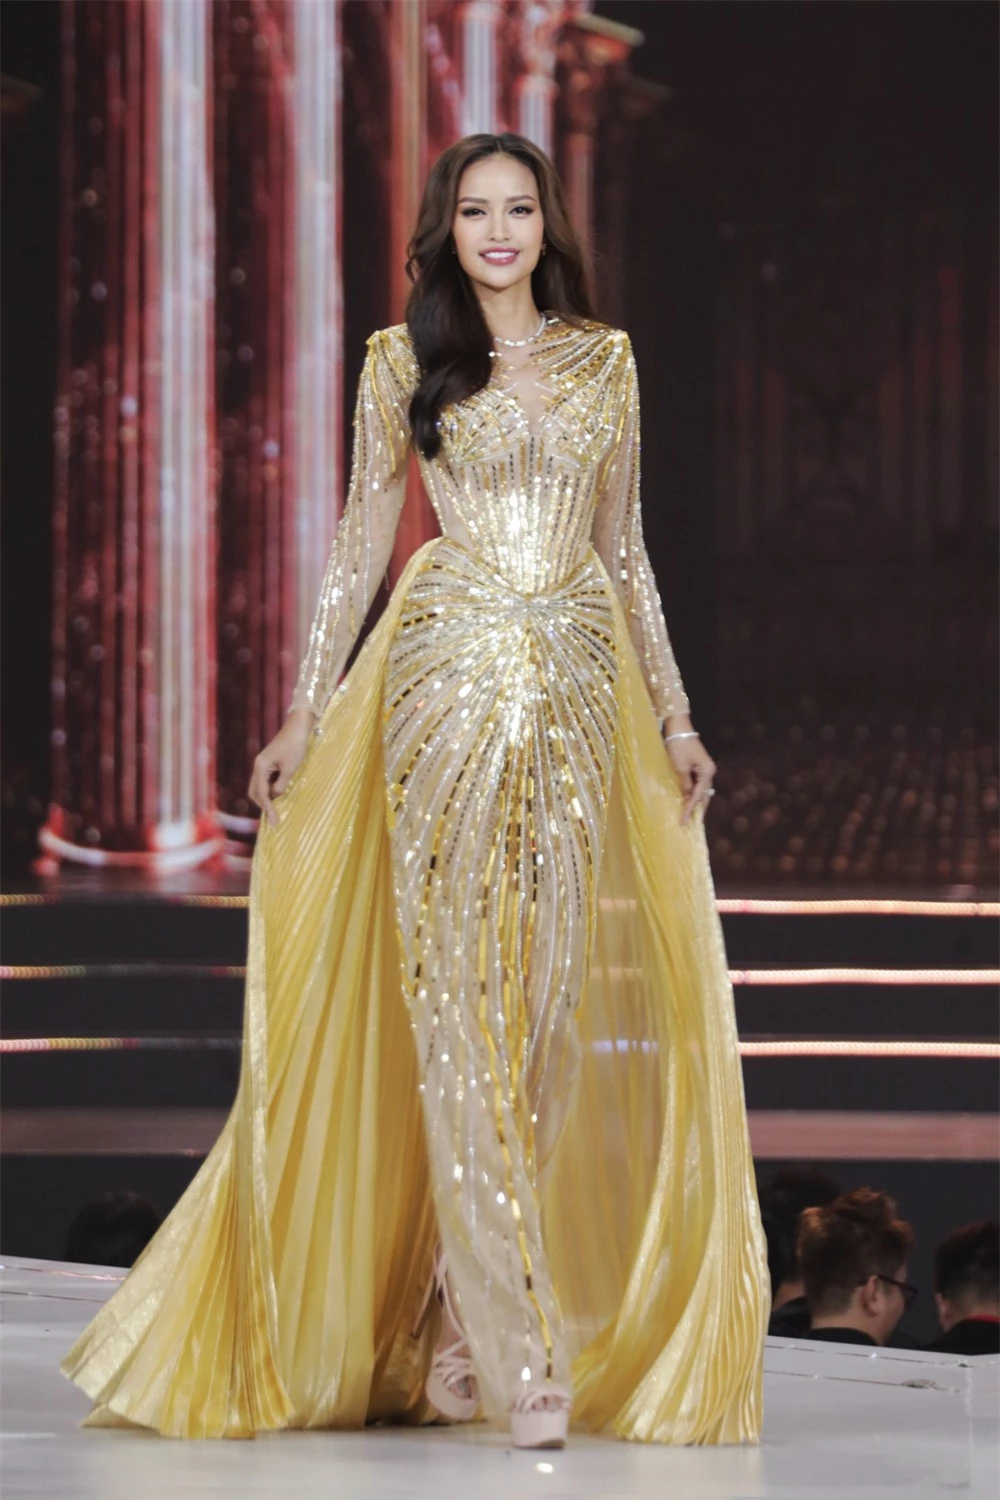 Bán kết Hoa hậu Hoàn vũ Việt Nam 2022: Loạt ứng viên cùng khoe vẻ nóng bỏng - Ảnh 22.